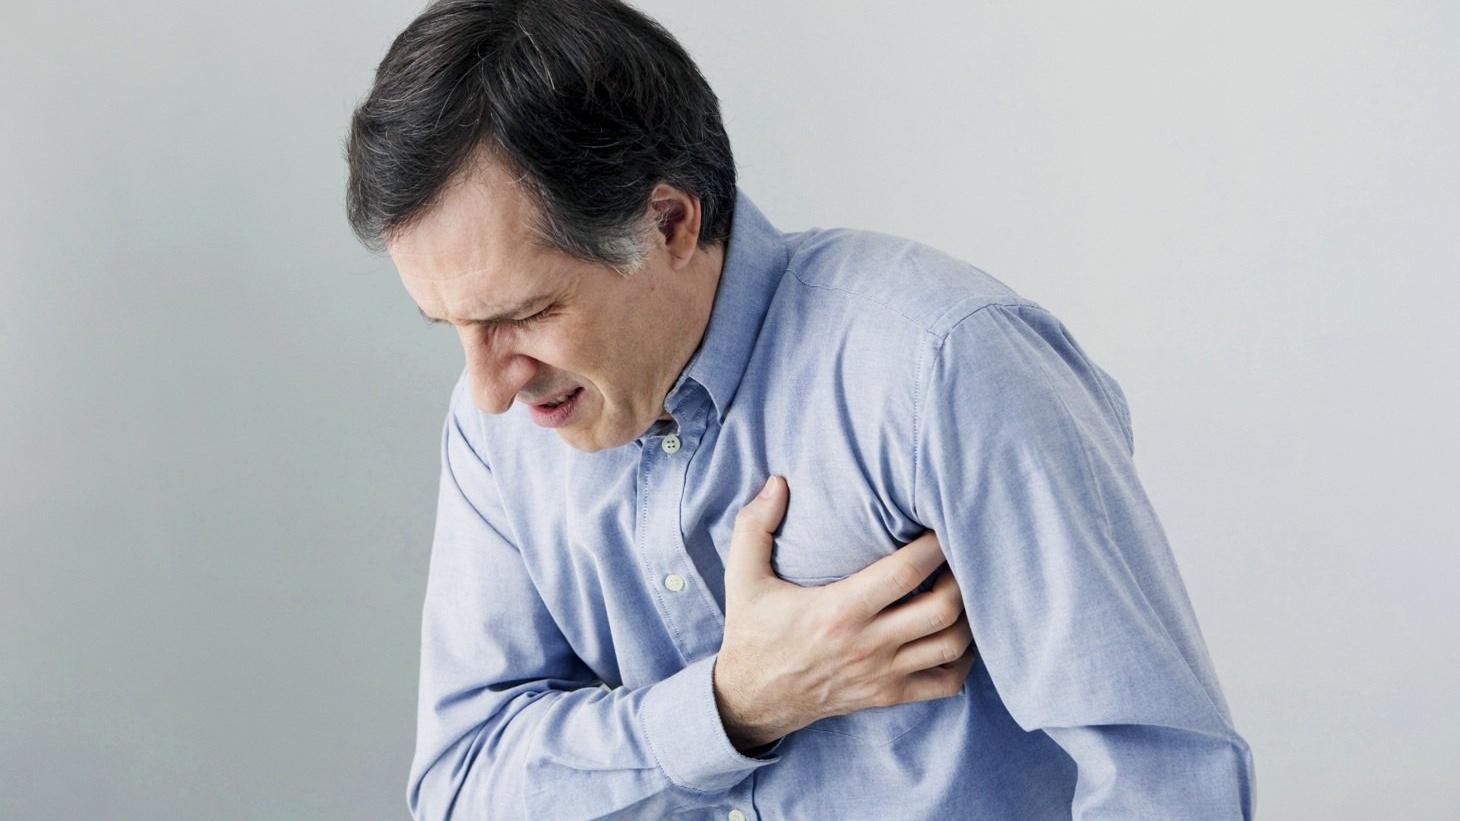 Các triệu chứng đi kèm hiện tượng tức ngực đau lưng là gì?
